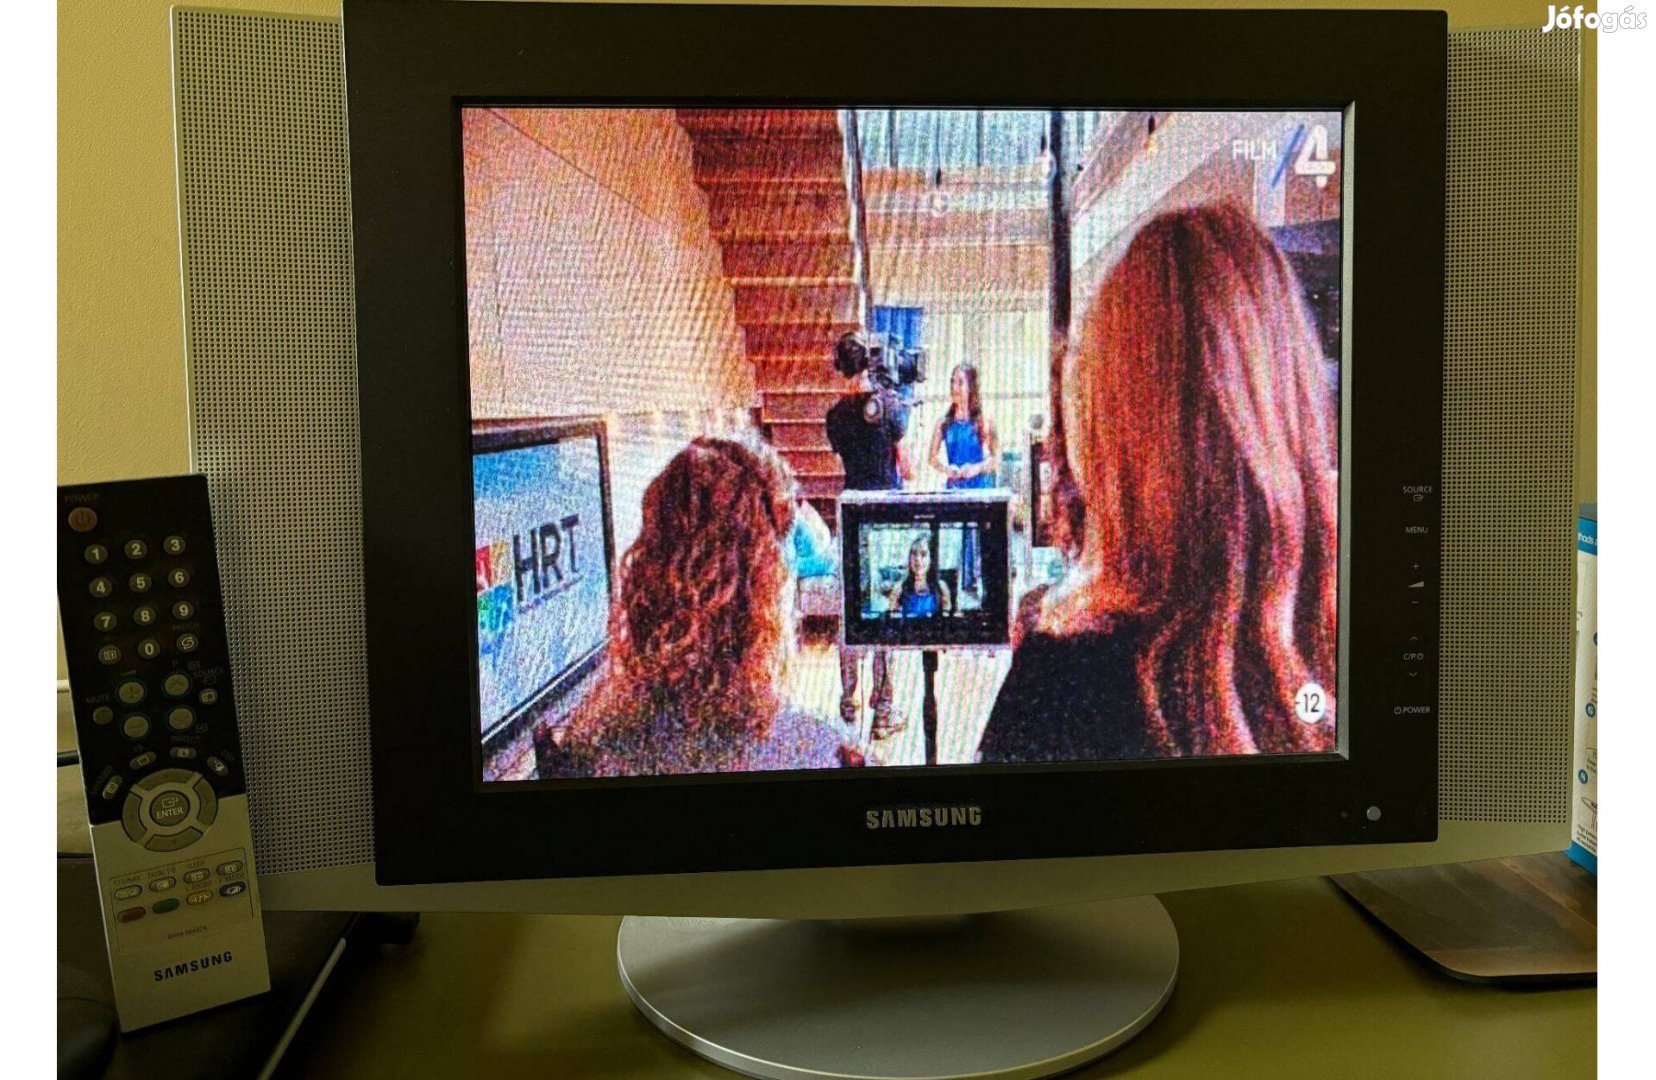 Samsung led TV, 38 cm kép átló